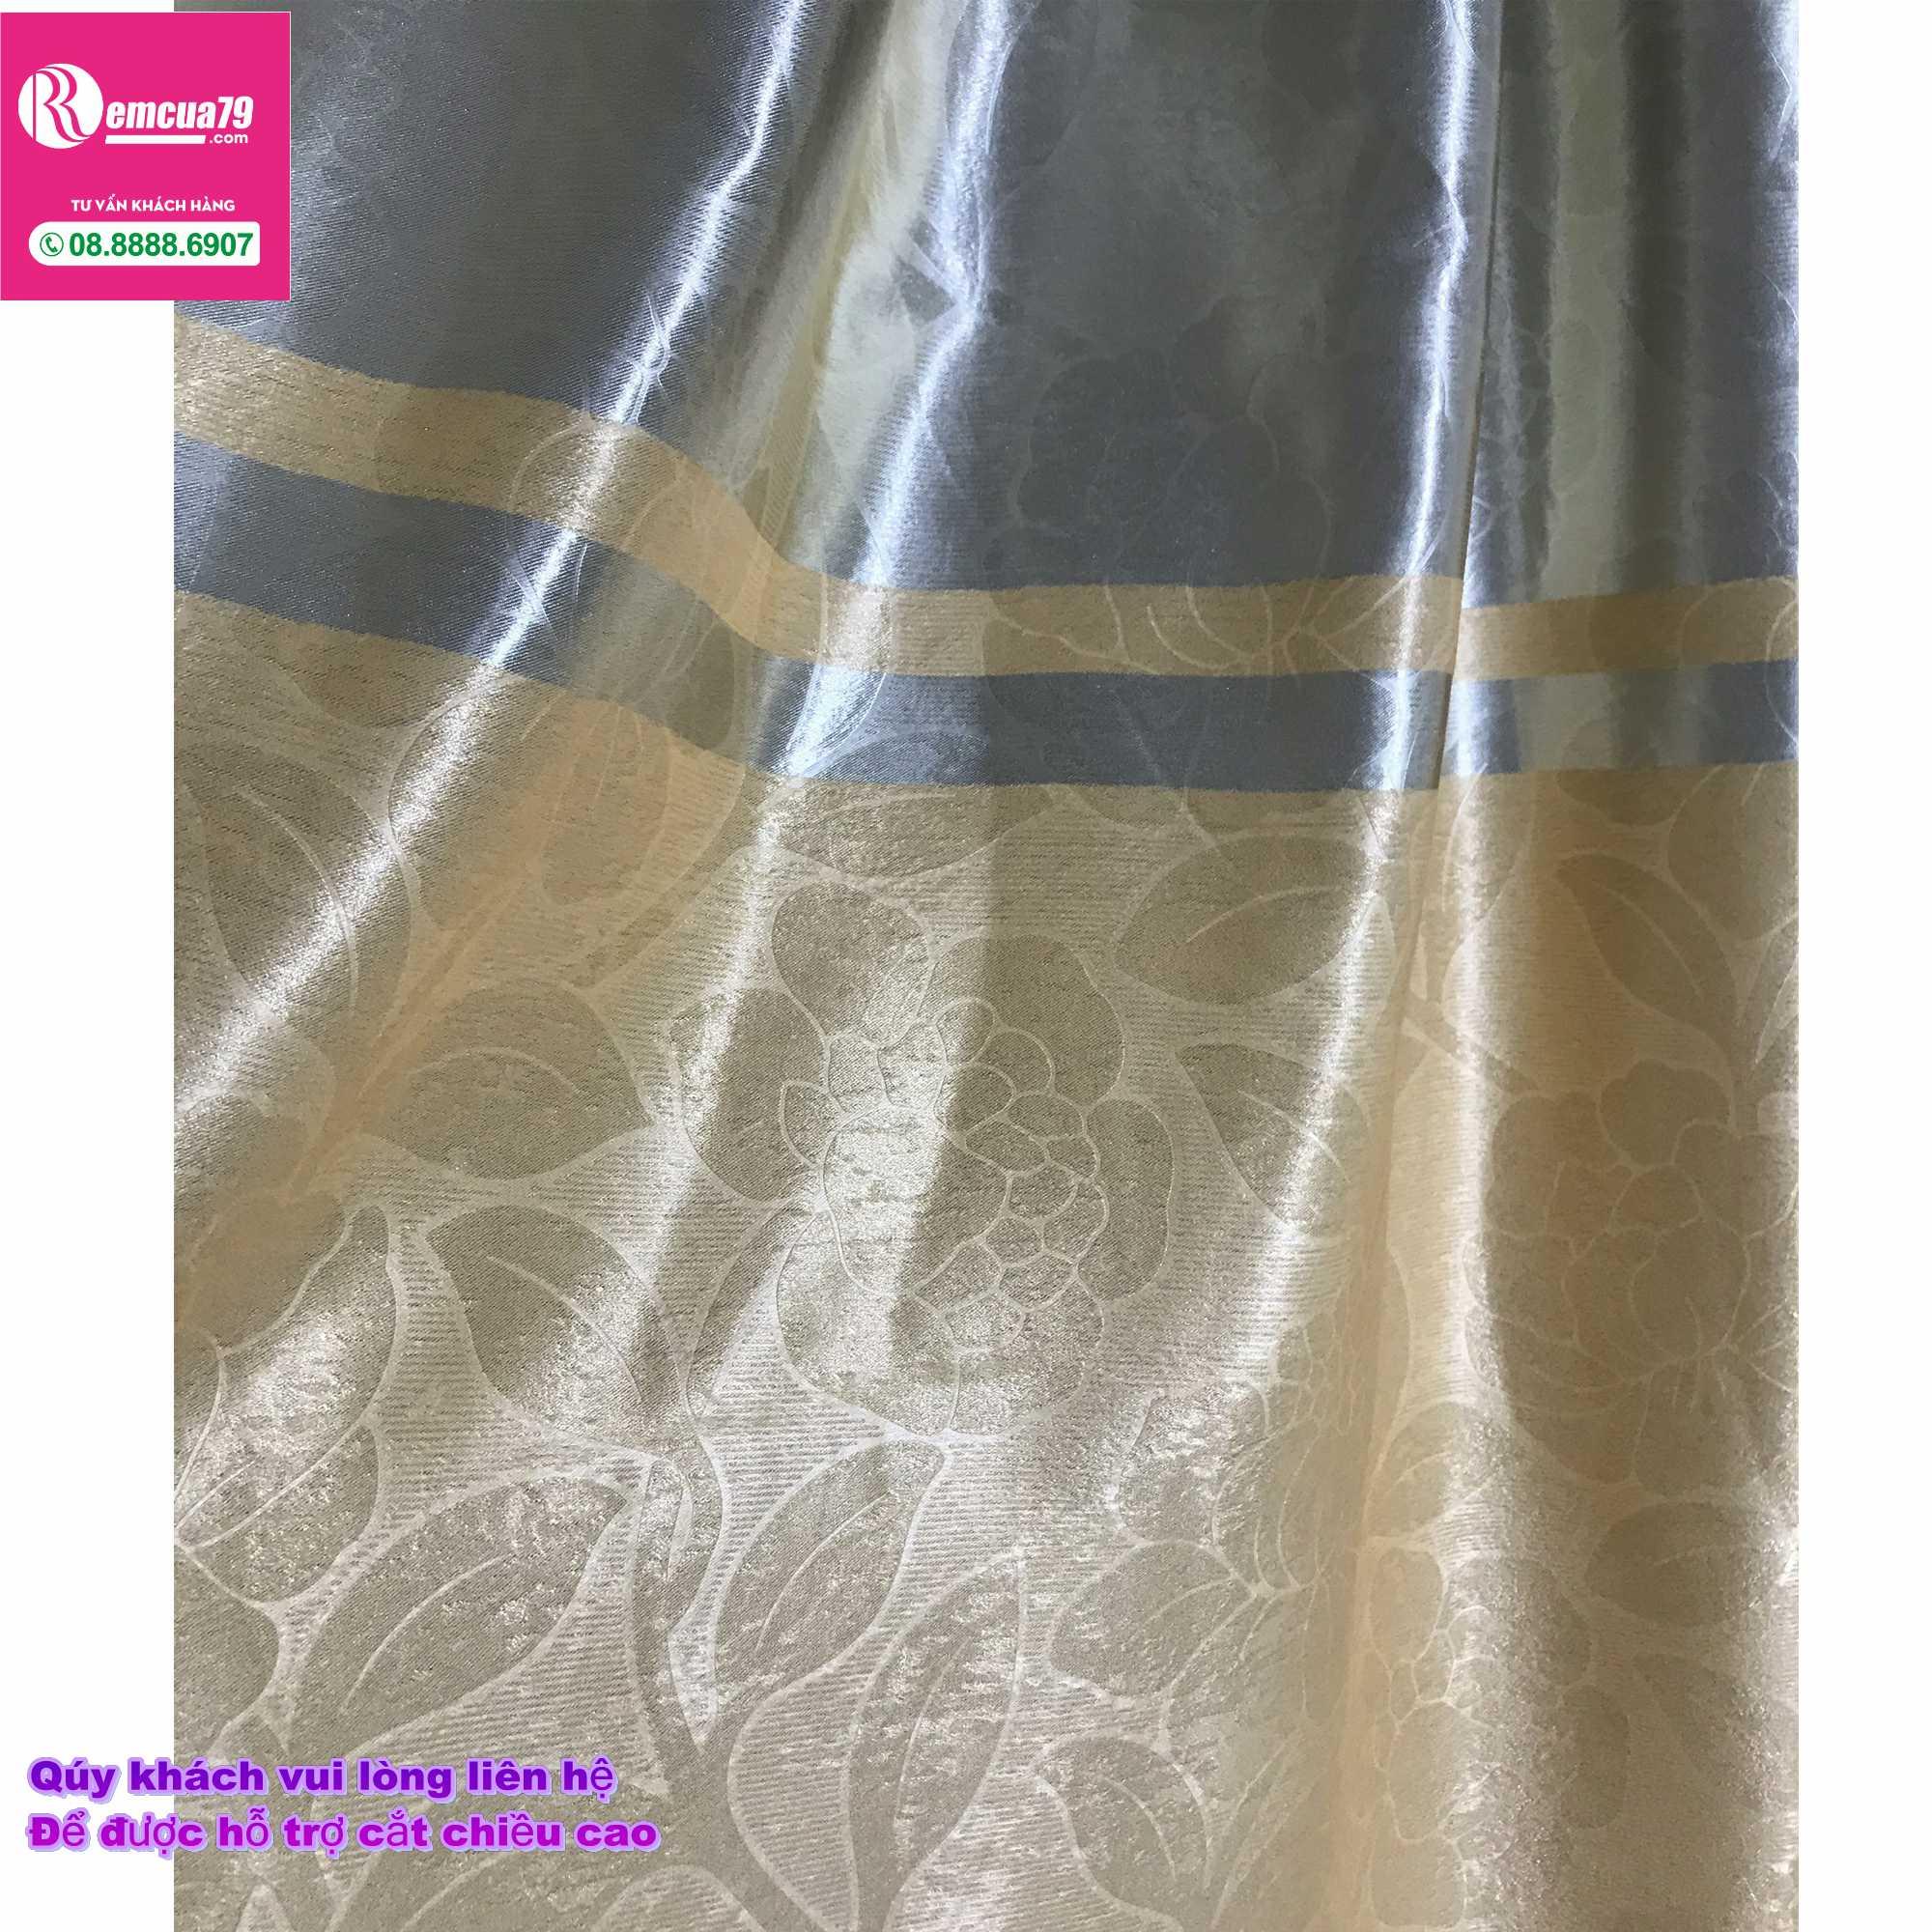 Rèm, màn cửa Ph curtains( ngang200cm x cao 130cm) Màu Vàng xám nhẹ hoa văn chìm + tặng dây vén màn